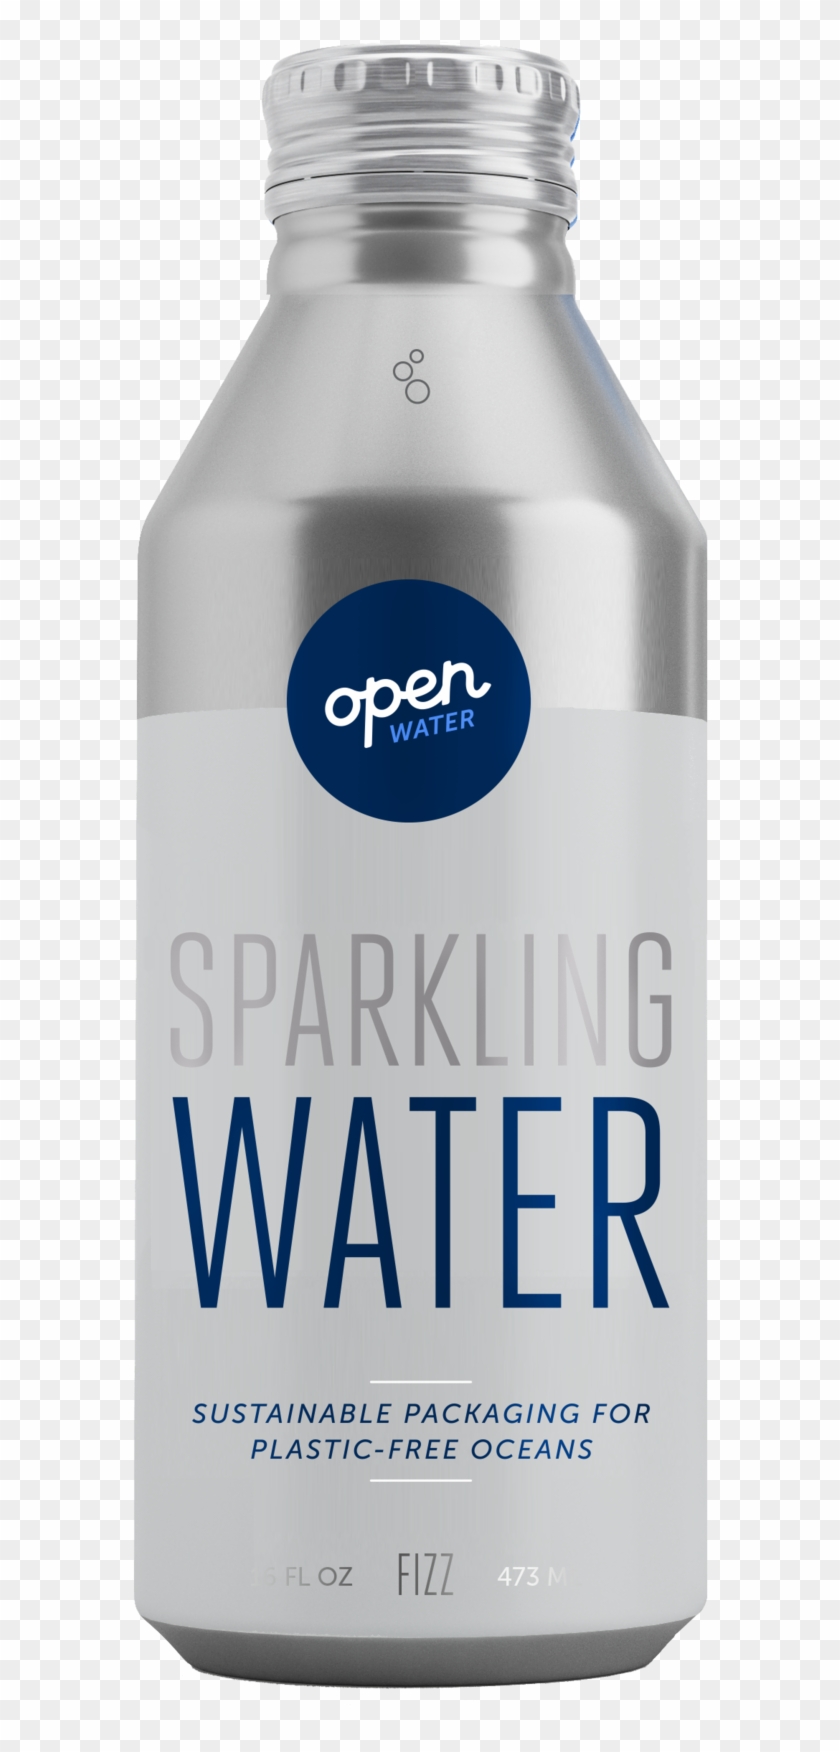 Open Water Sparkling Water In Aluminum Bottle - Open Water Bottle Clipart #3022305